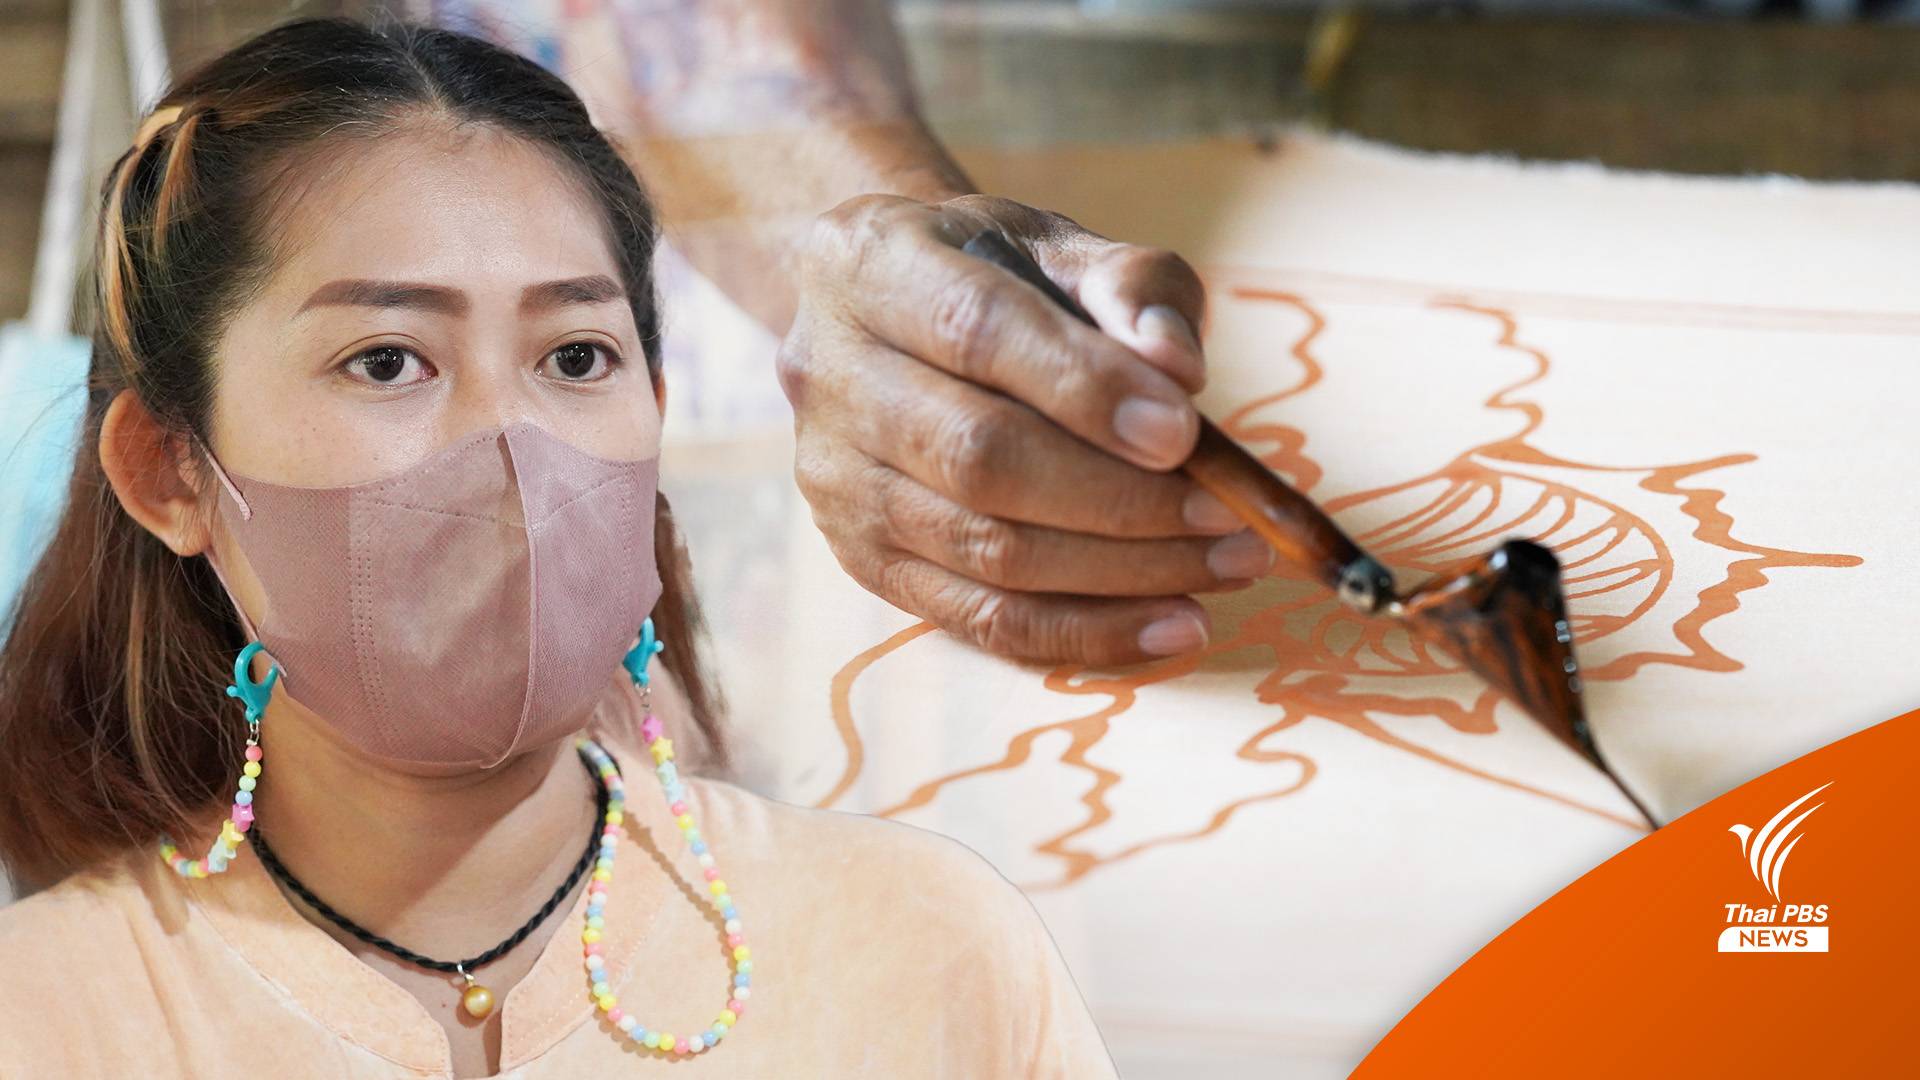 หนึ่งเดียวในไทย ลายฟอสซิล-ย้อมสีดิน ต่อลมหายใจ 20 ปี "ปันหยาบาติก"